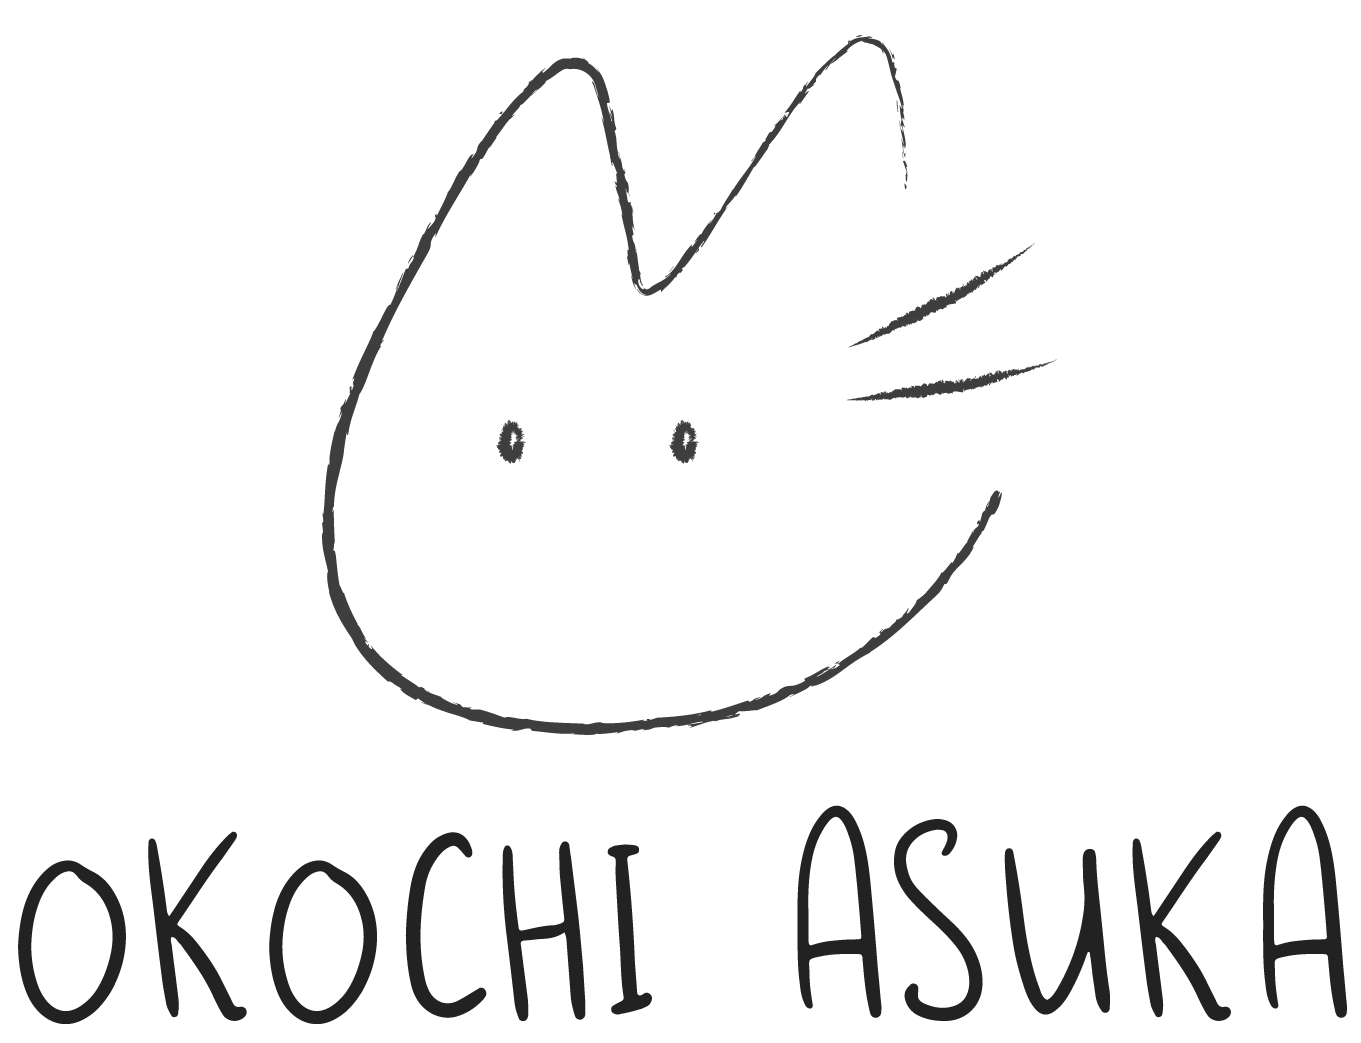 OKOCHI ASUKA